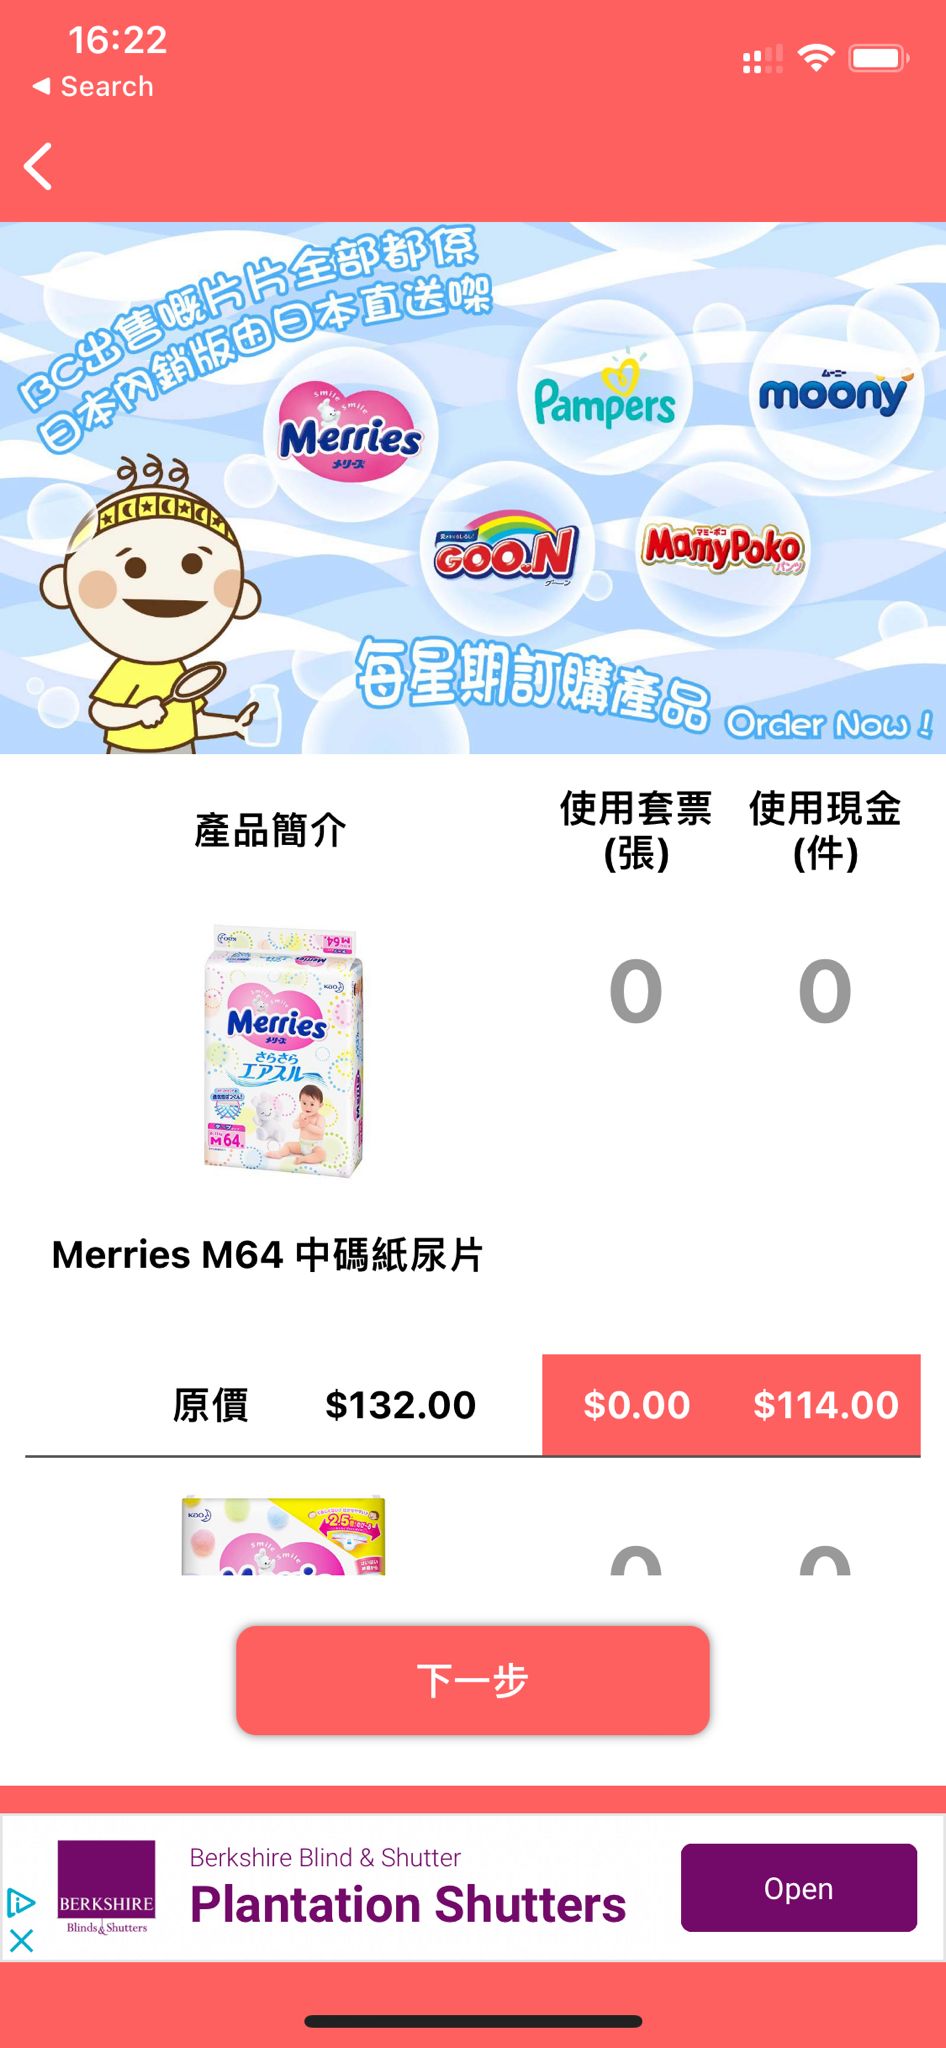 原本大部分日本尿片都不需補差價，惟近日網站宣佈部分尿片差價需加價，每包最高加$8。(圖片授權：《親子王》讀者)